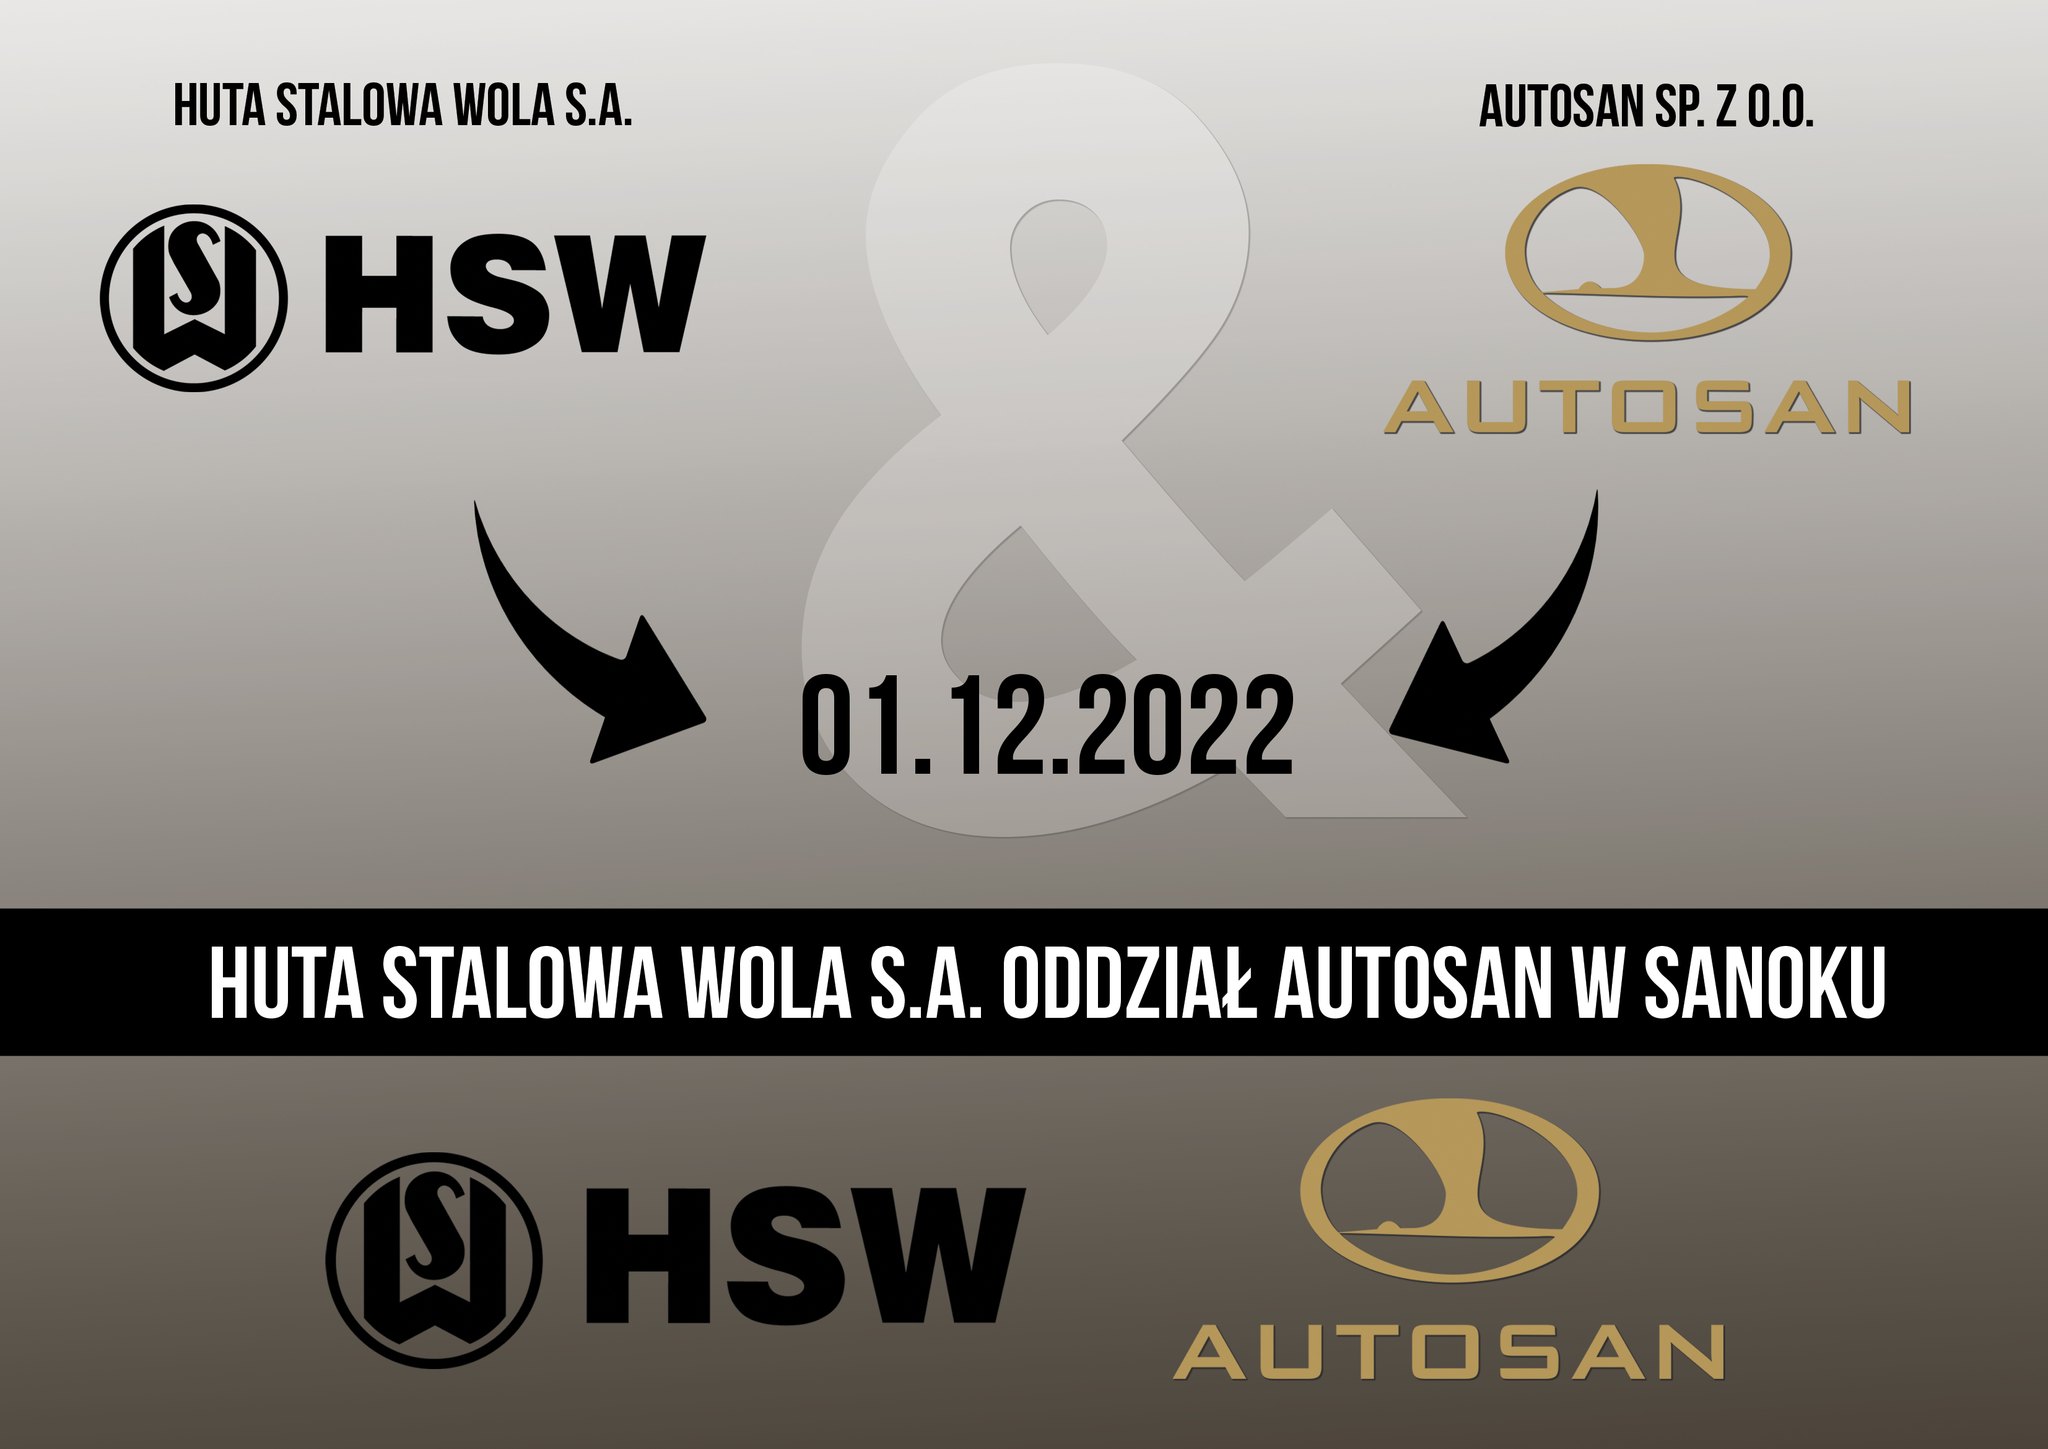 Przedsiębiorstwo AUTOSAN stało się częścią Huty Stalowa Wola S.A.